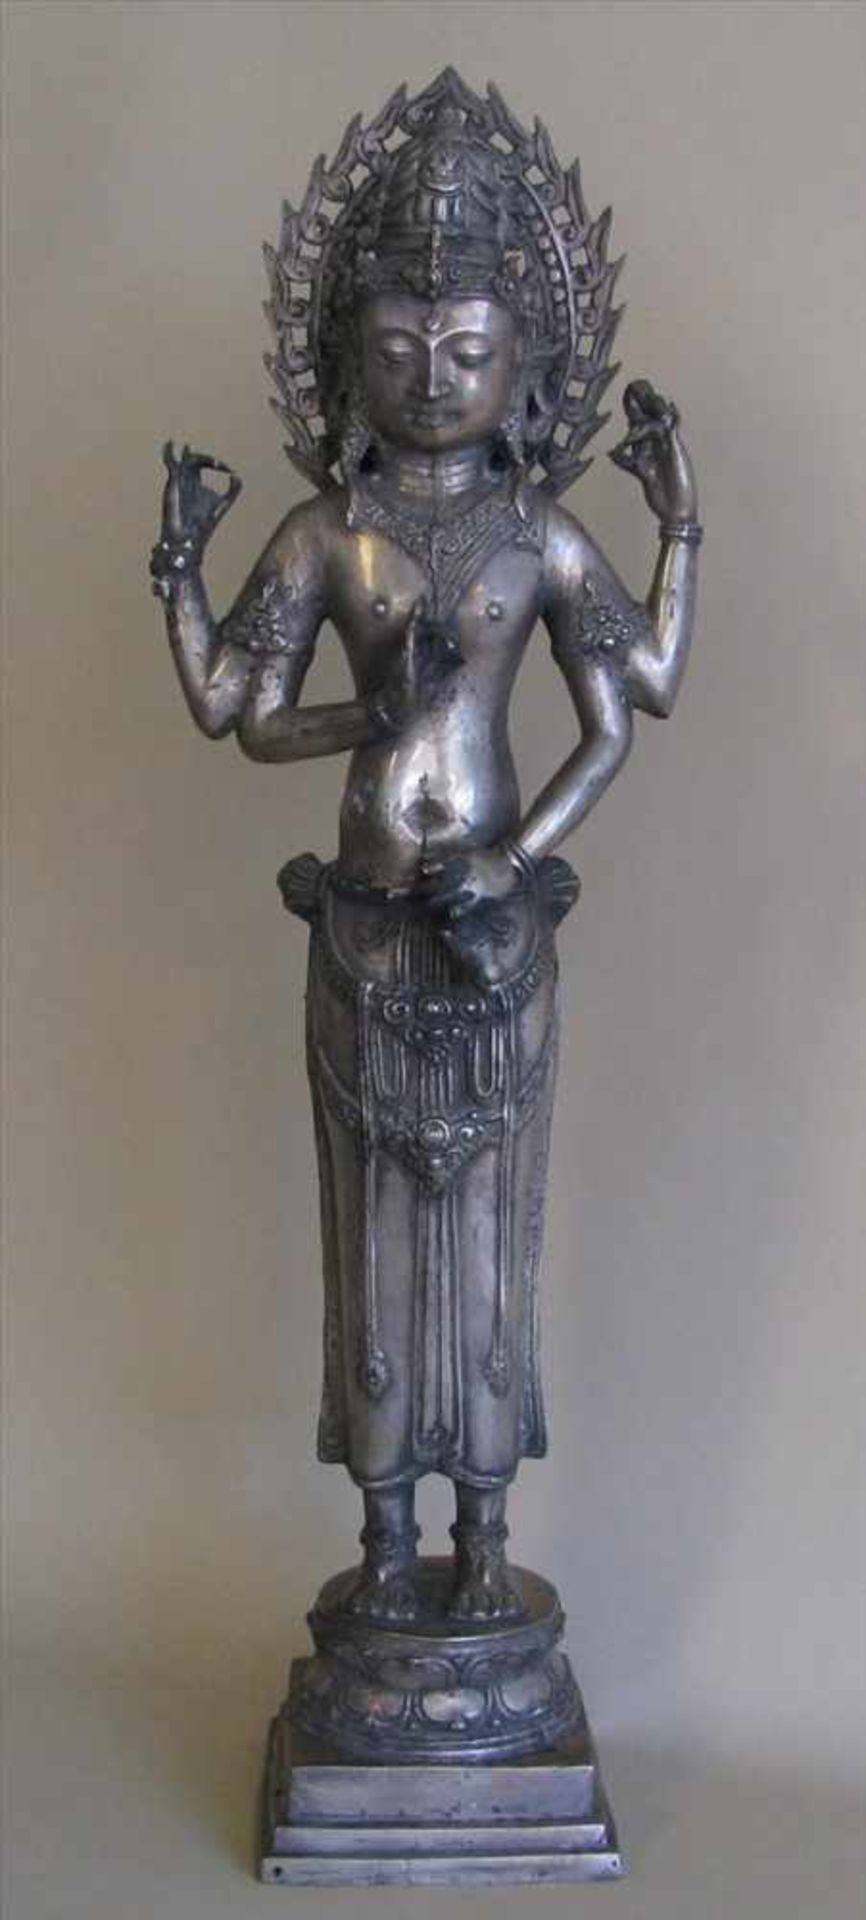 Stehende, vierarmige Gottheit auf Lotussockel, Messing versilbert, 62 x 18 x 12,2 cm.